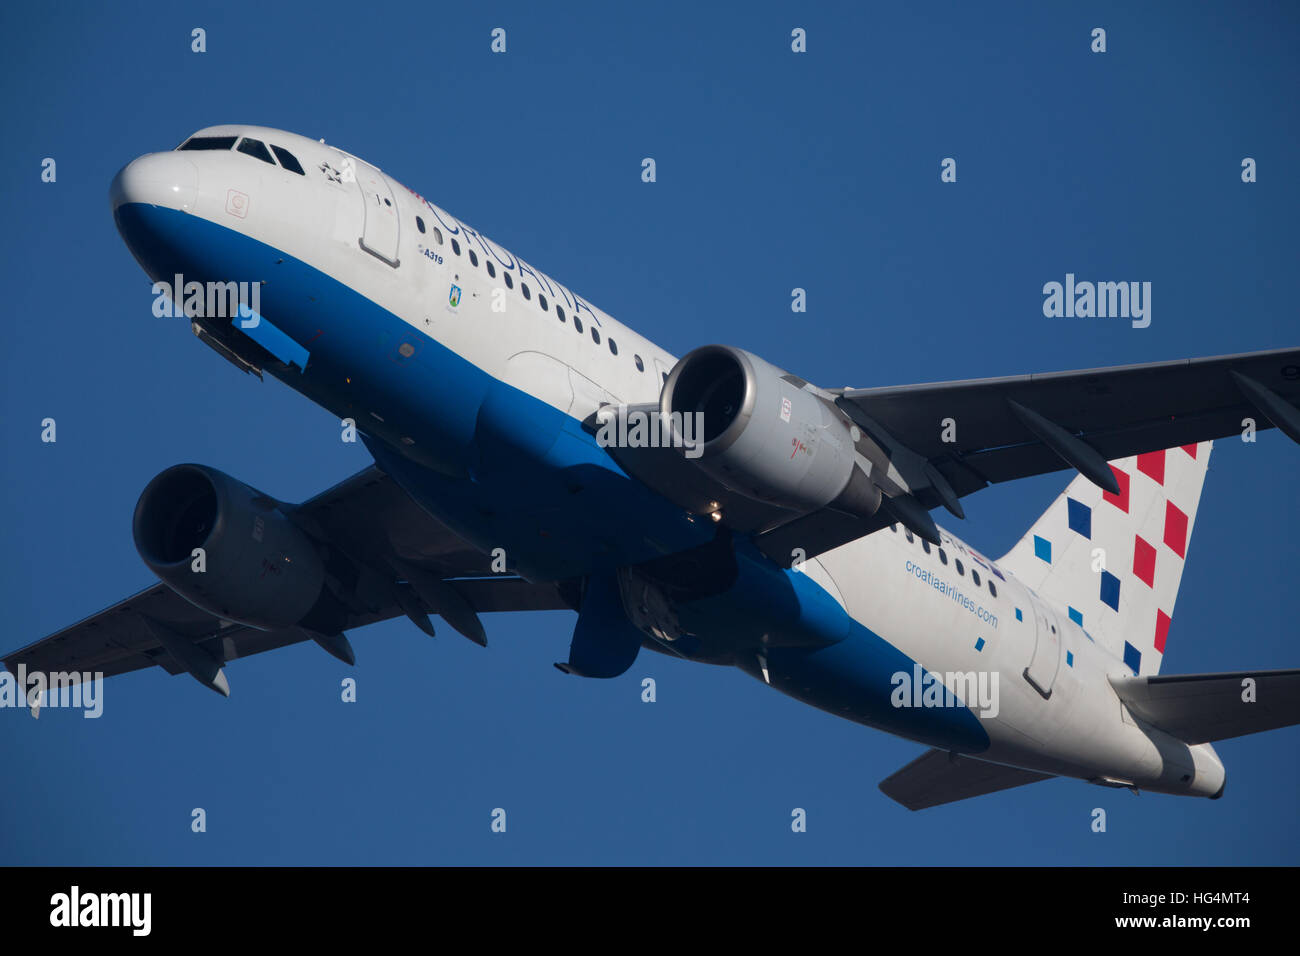 Croatia Airlines Airbus Stock Photo